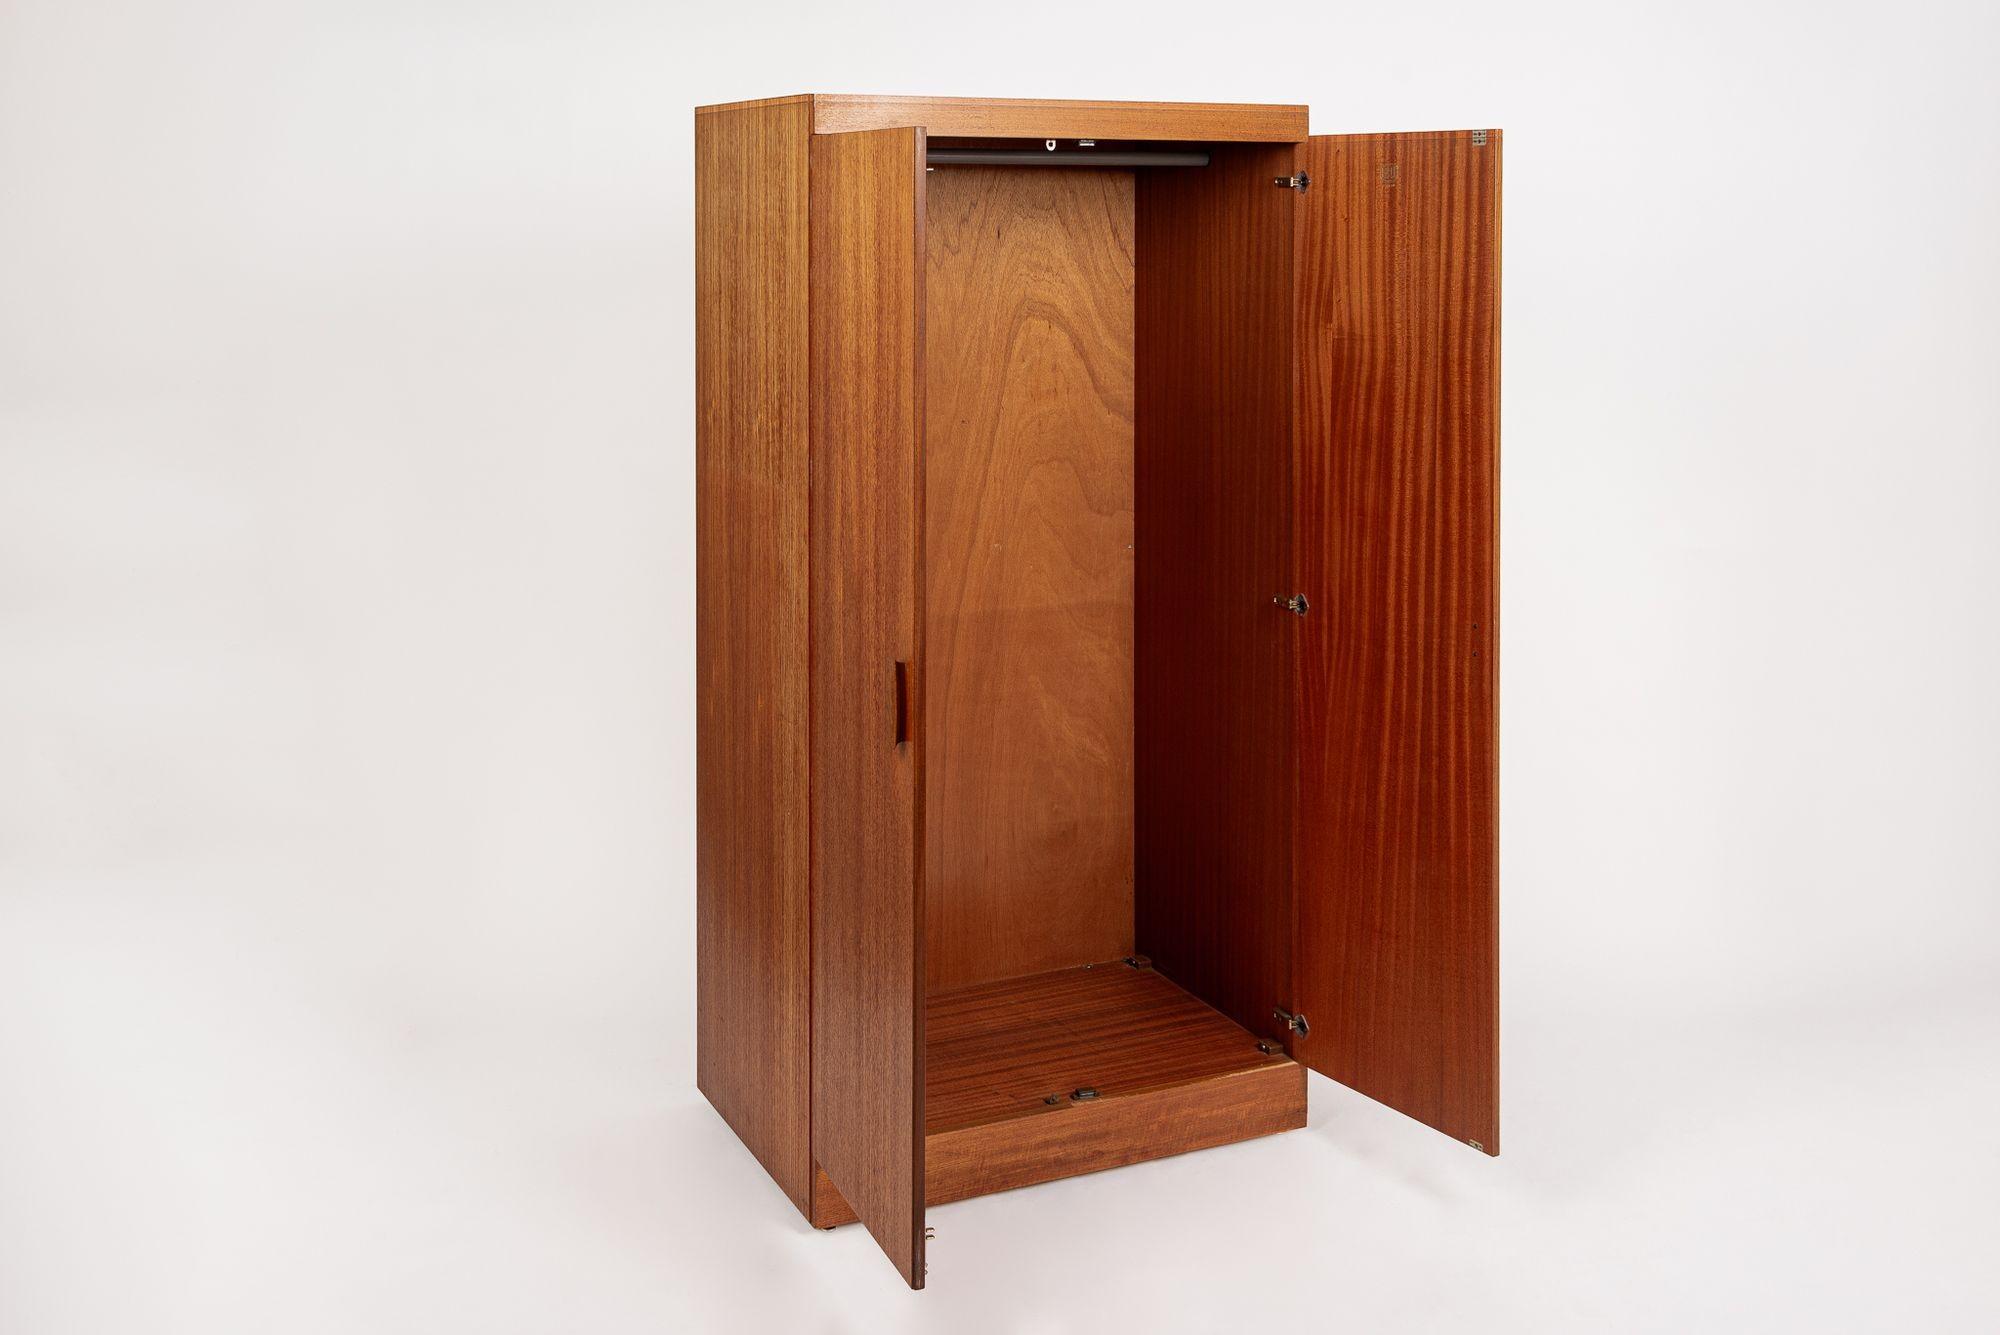 British Mid Century Teak Wood Armoire Wardrobe Cabinet by G-Plan